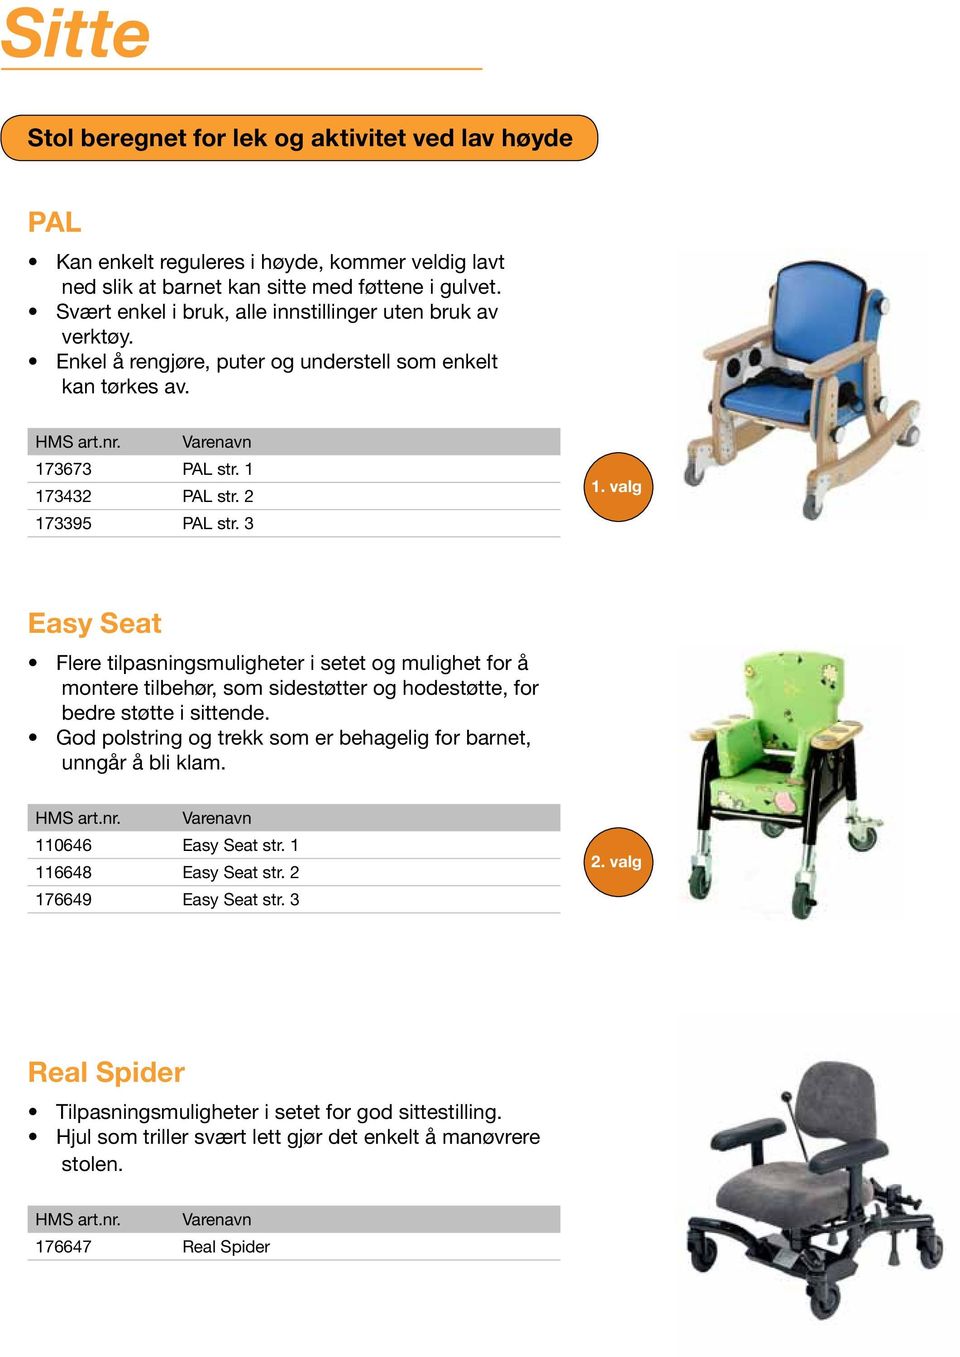 3 Easy Seat Flere tilpasningsmuligheter i setet og mulighet for å montere tilbehør, som sidestøtter og hodestøtte, for bedre støtte i sittende.